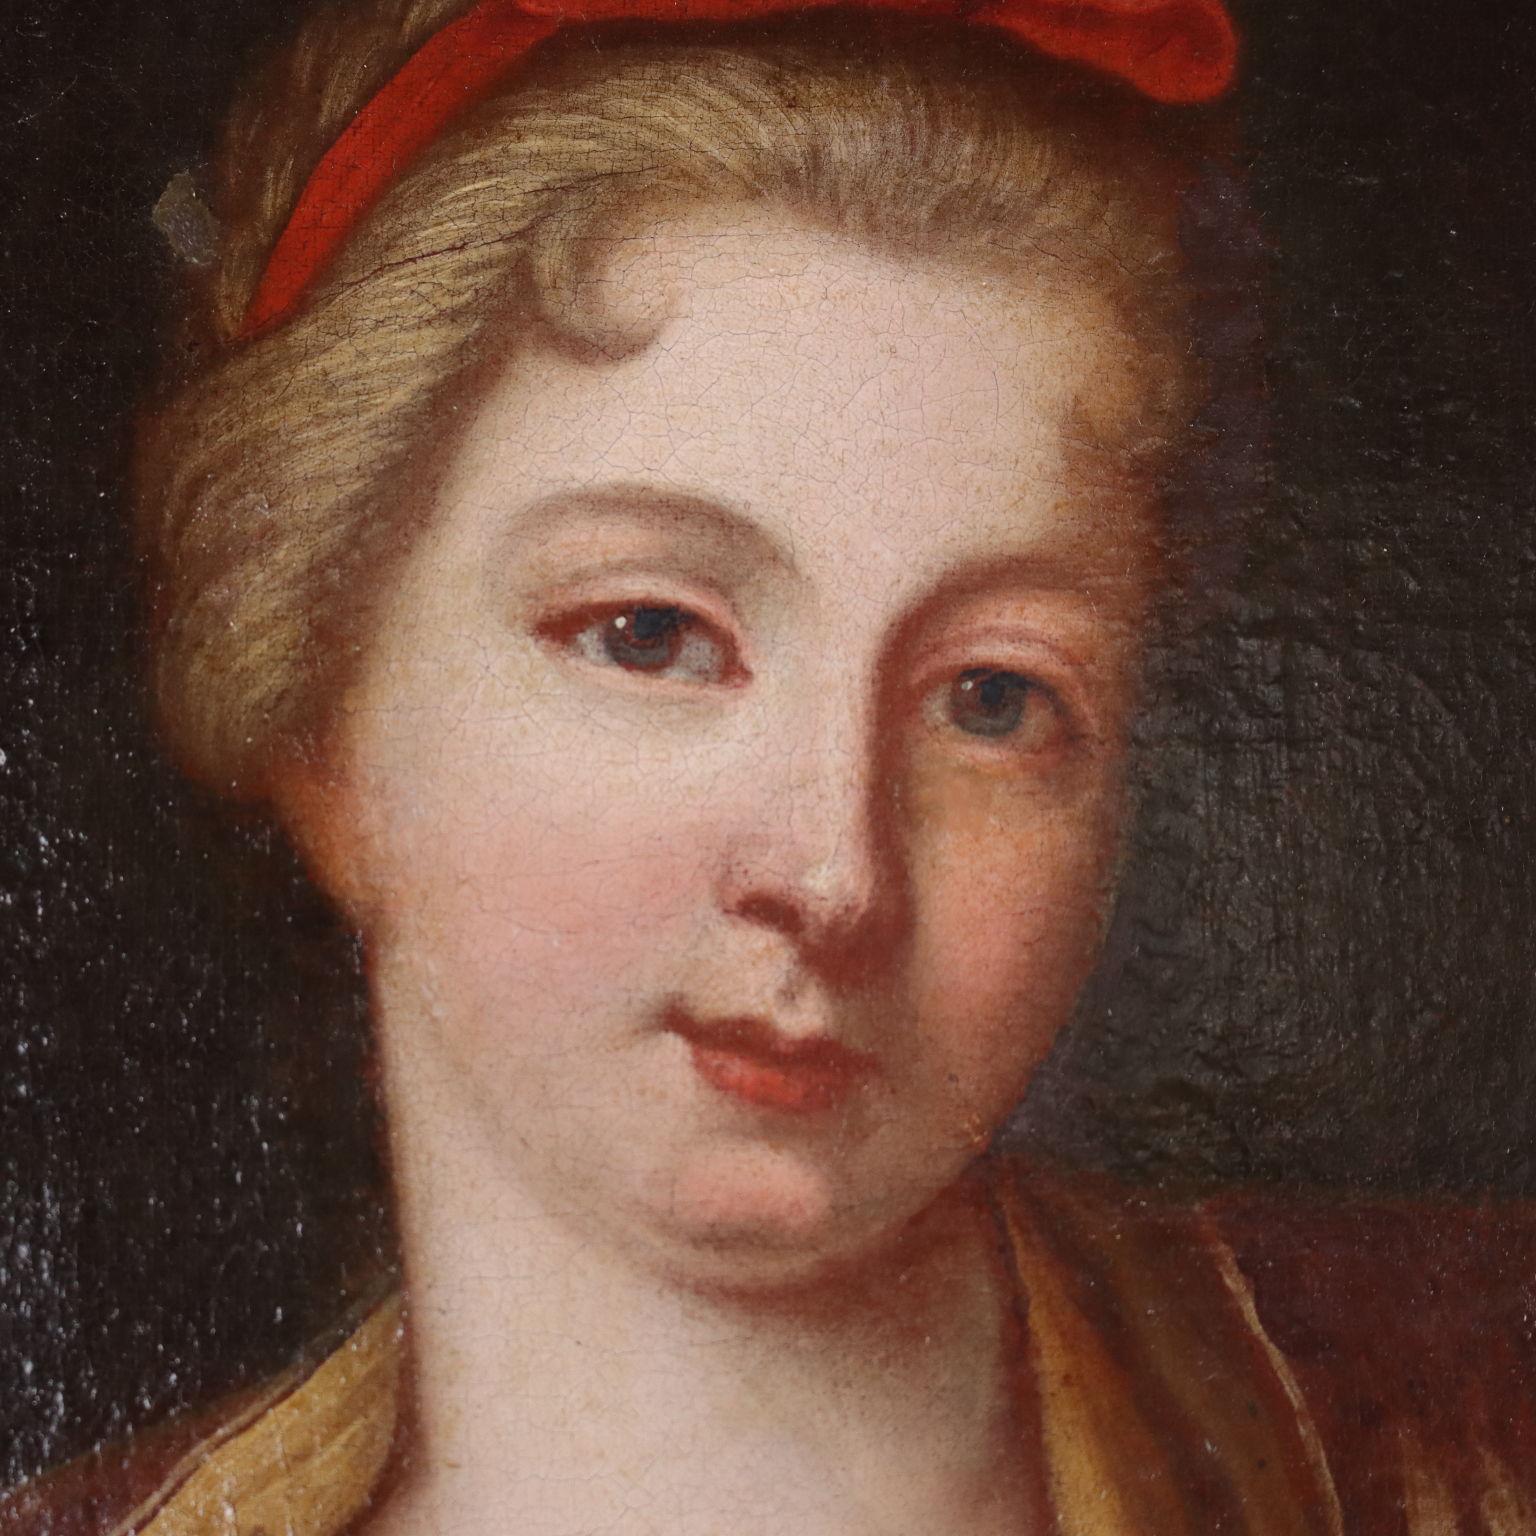 Öl auf Leinwand. Nordeuropäische Schule des 18. Jahrhunderts.
Die allegorische Szene zeigt eine diskrete Frau, die auf dem Schoß eines Mannes an einem Tisch sitzt, der mit einem Krug, einem Kelch, einer Schnupftabakdose und einer angezündeten